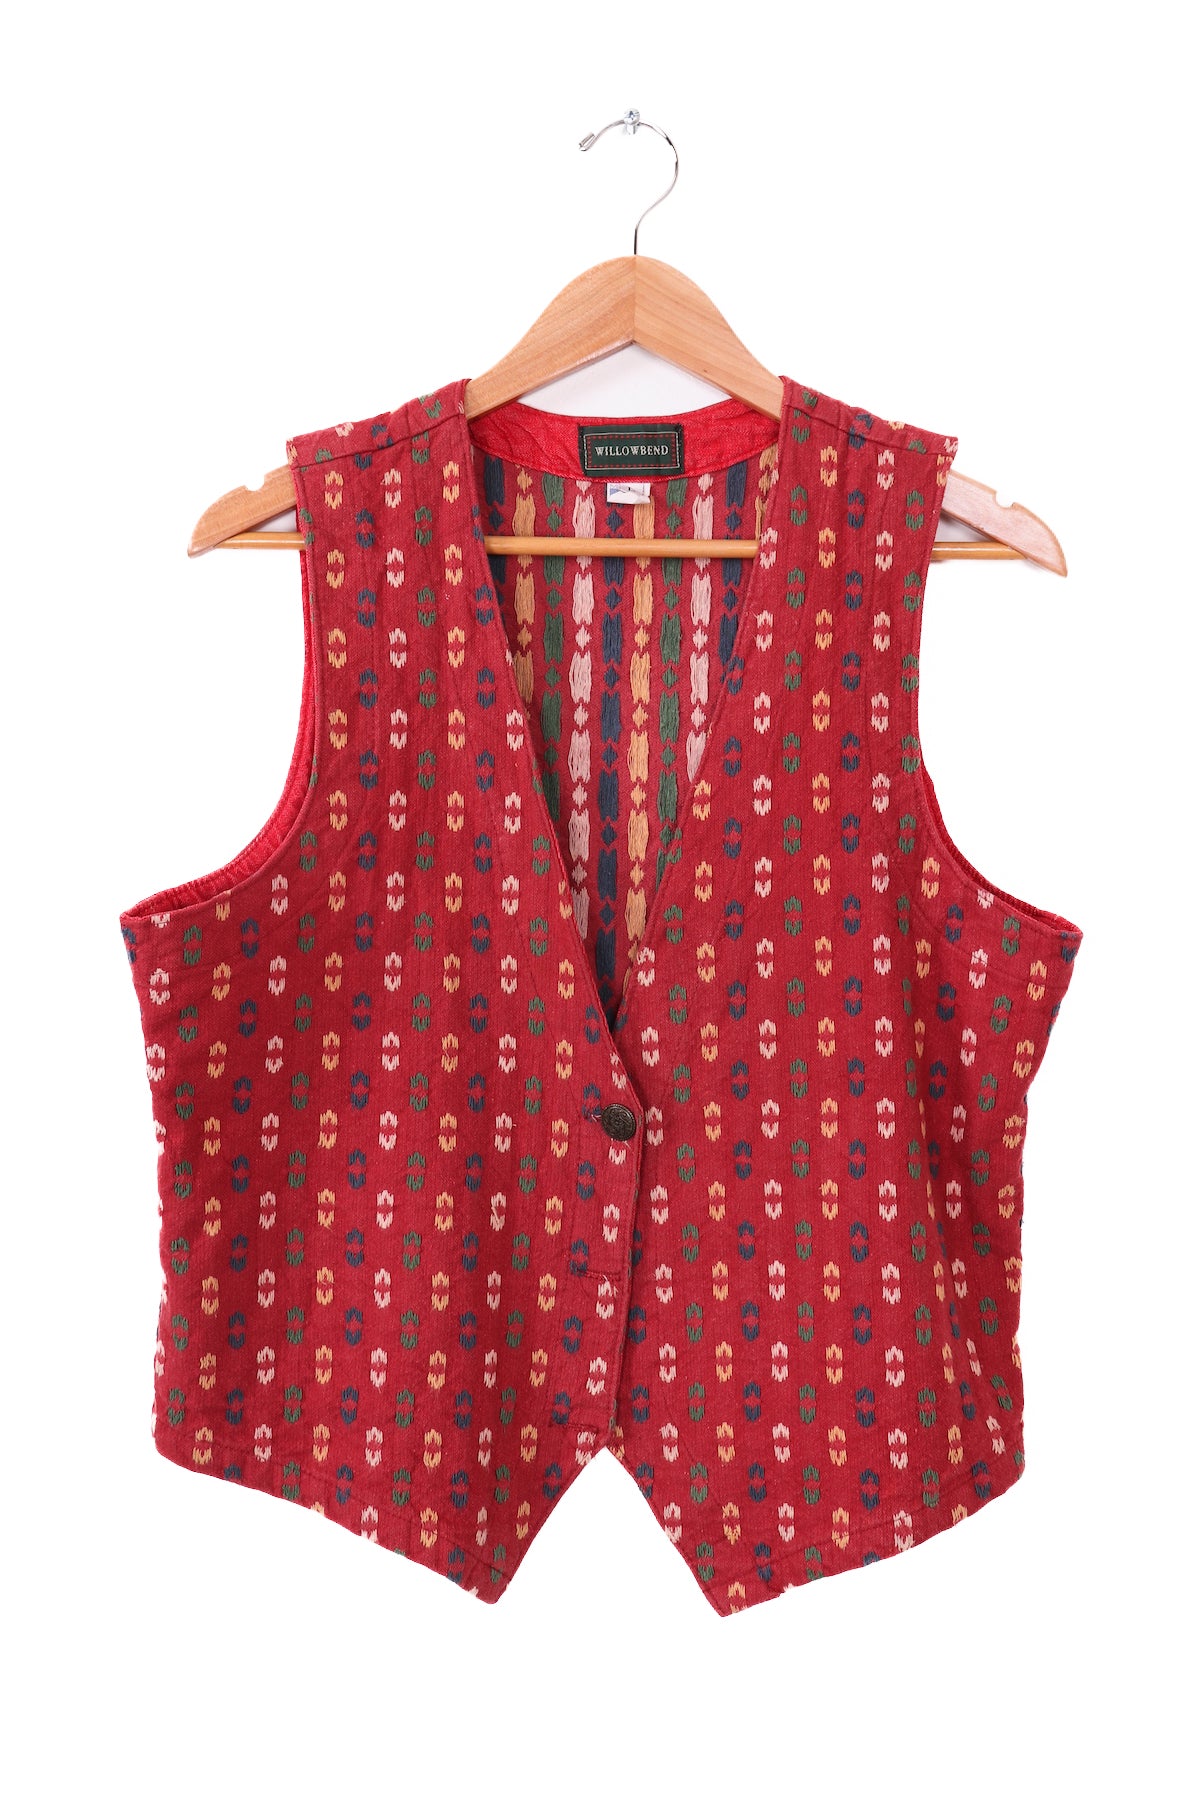 Vintage 70s-80s Willowbend Red Patterned Vest